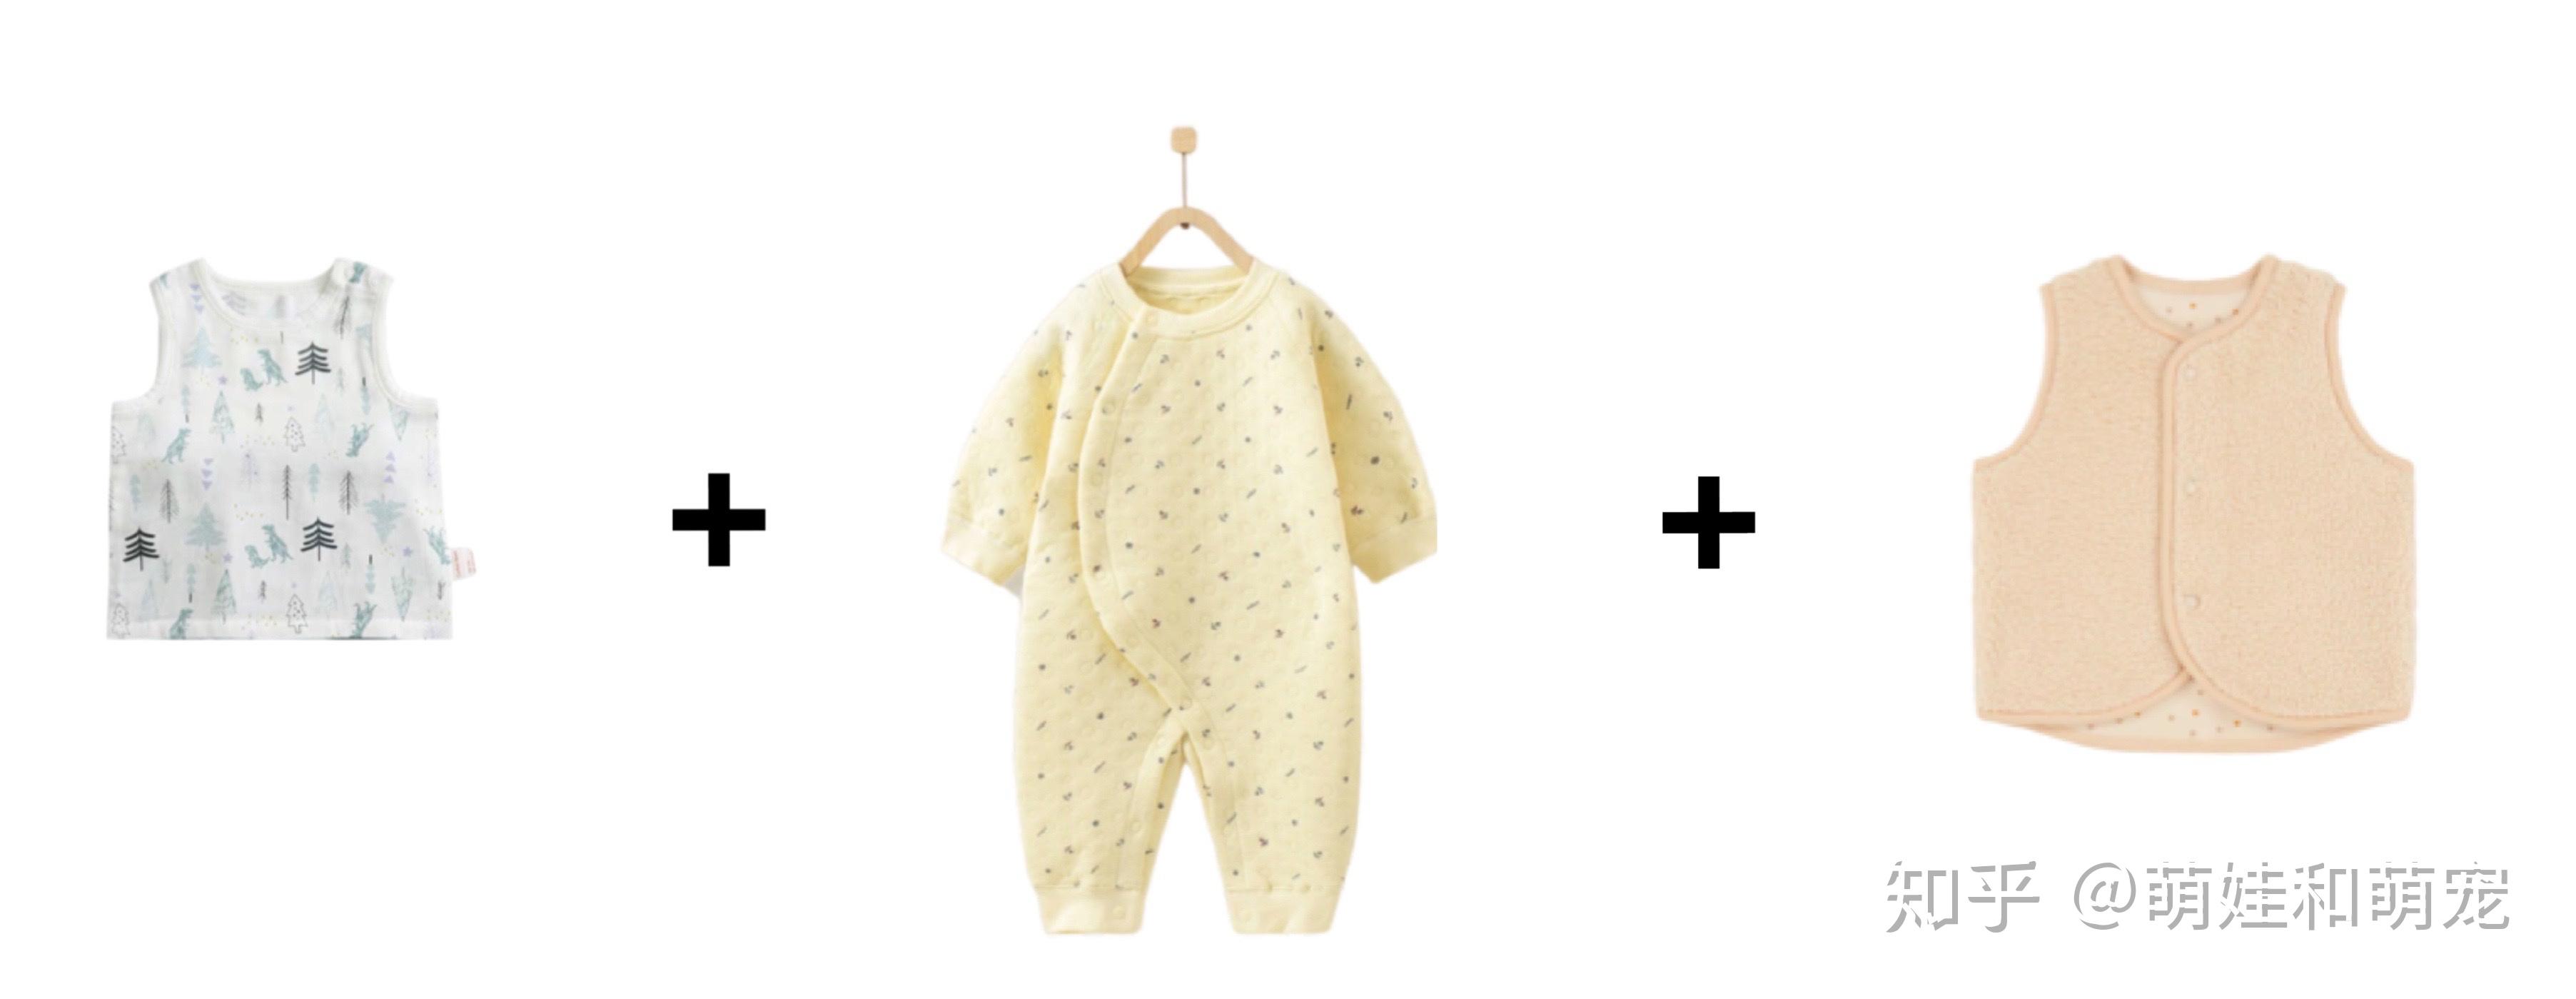 宝宝保暖穿衣怎么做 如何挑选幼儿保暖用品 _八宝网